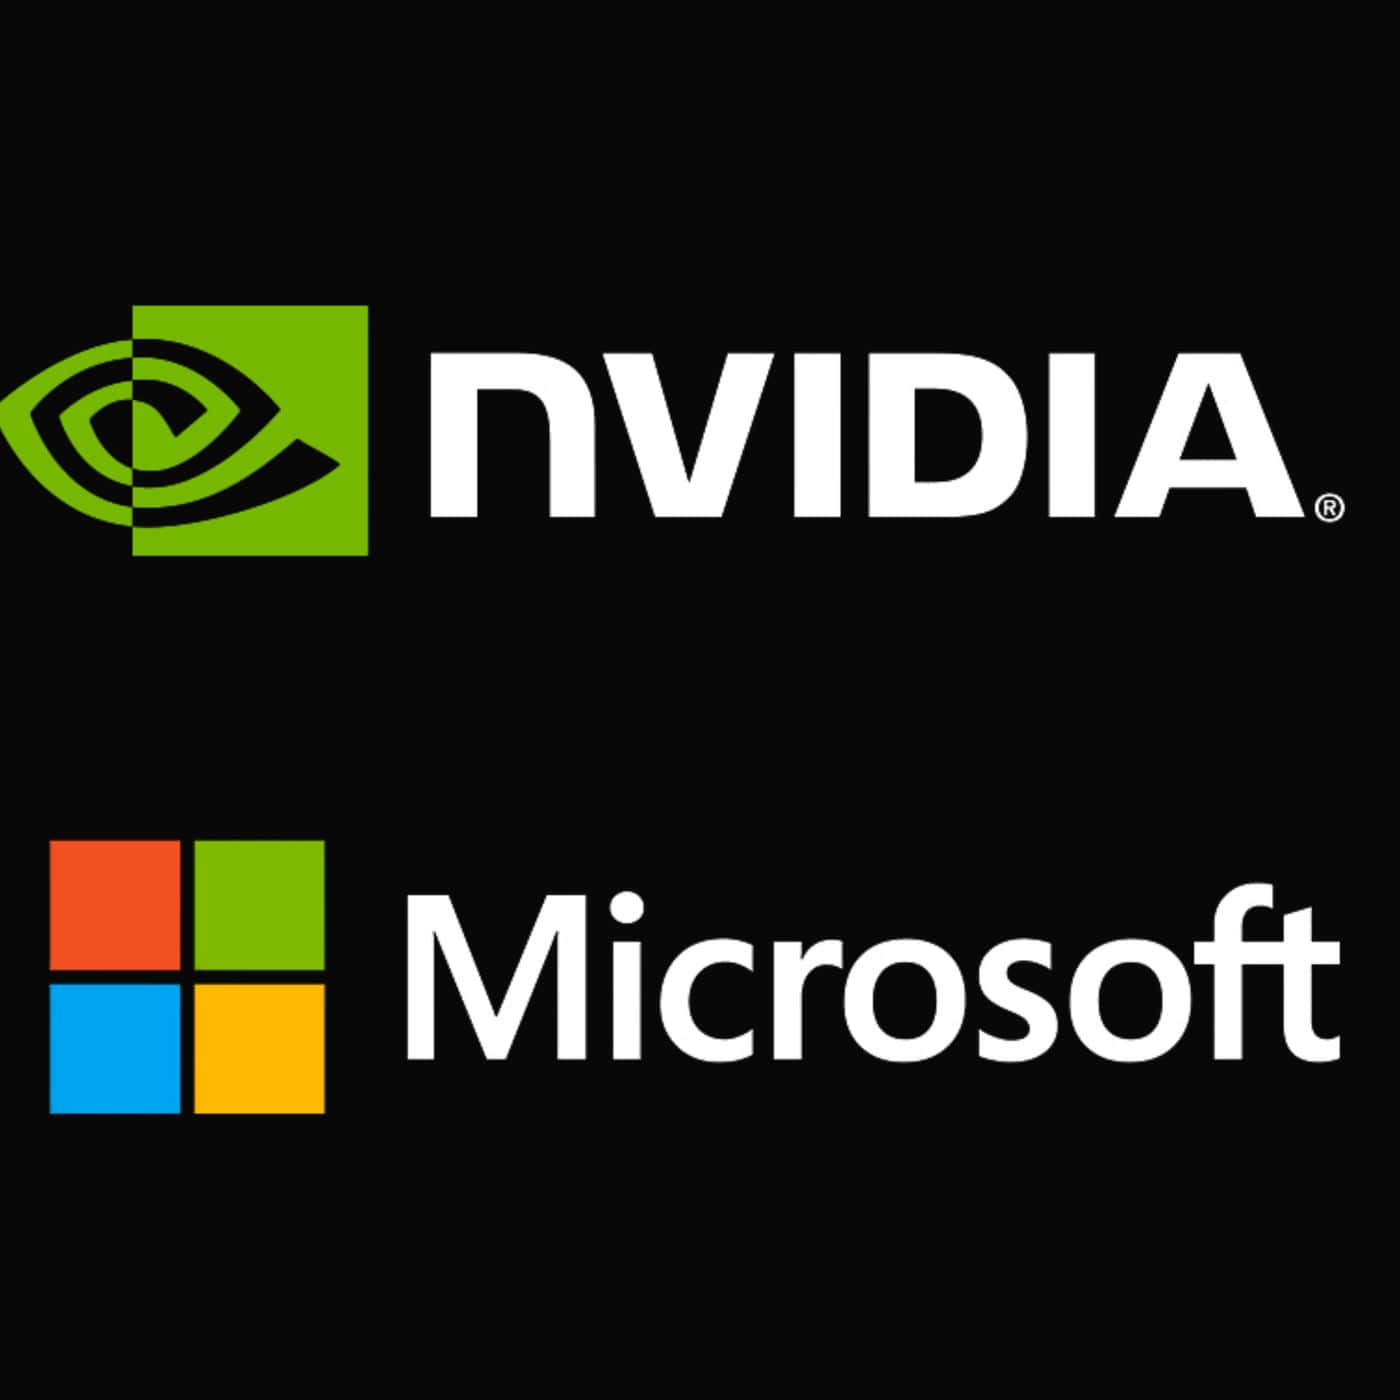 Nvidiaoch Microsoft-logotyper På En Svart Bakgrund.